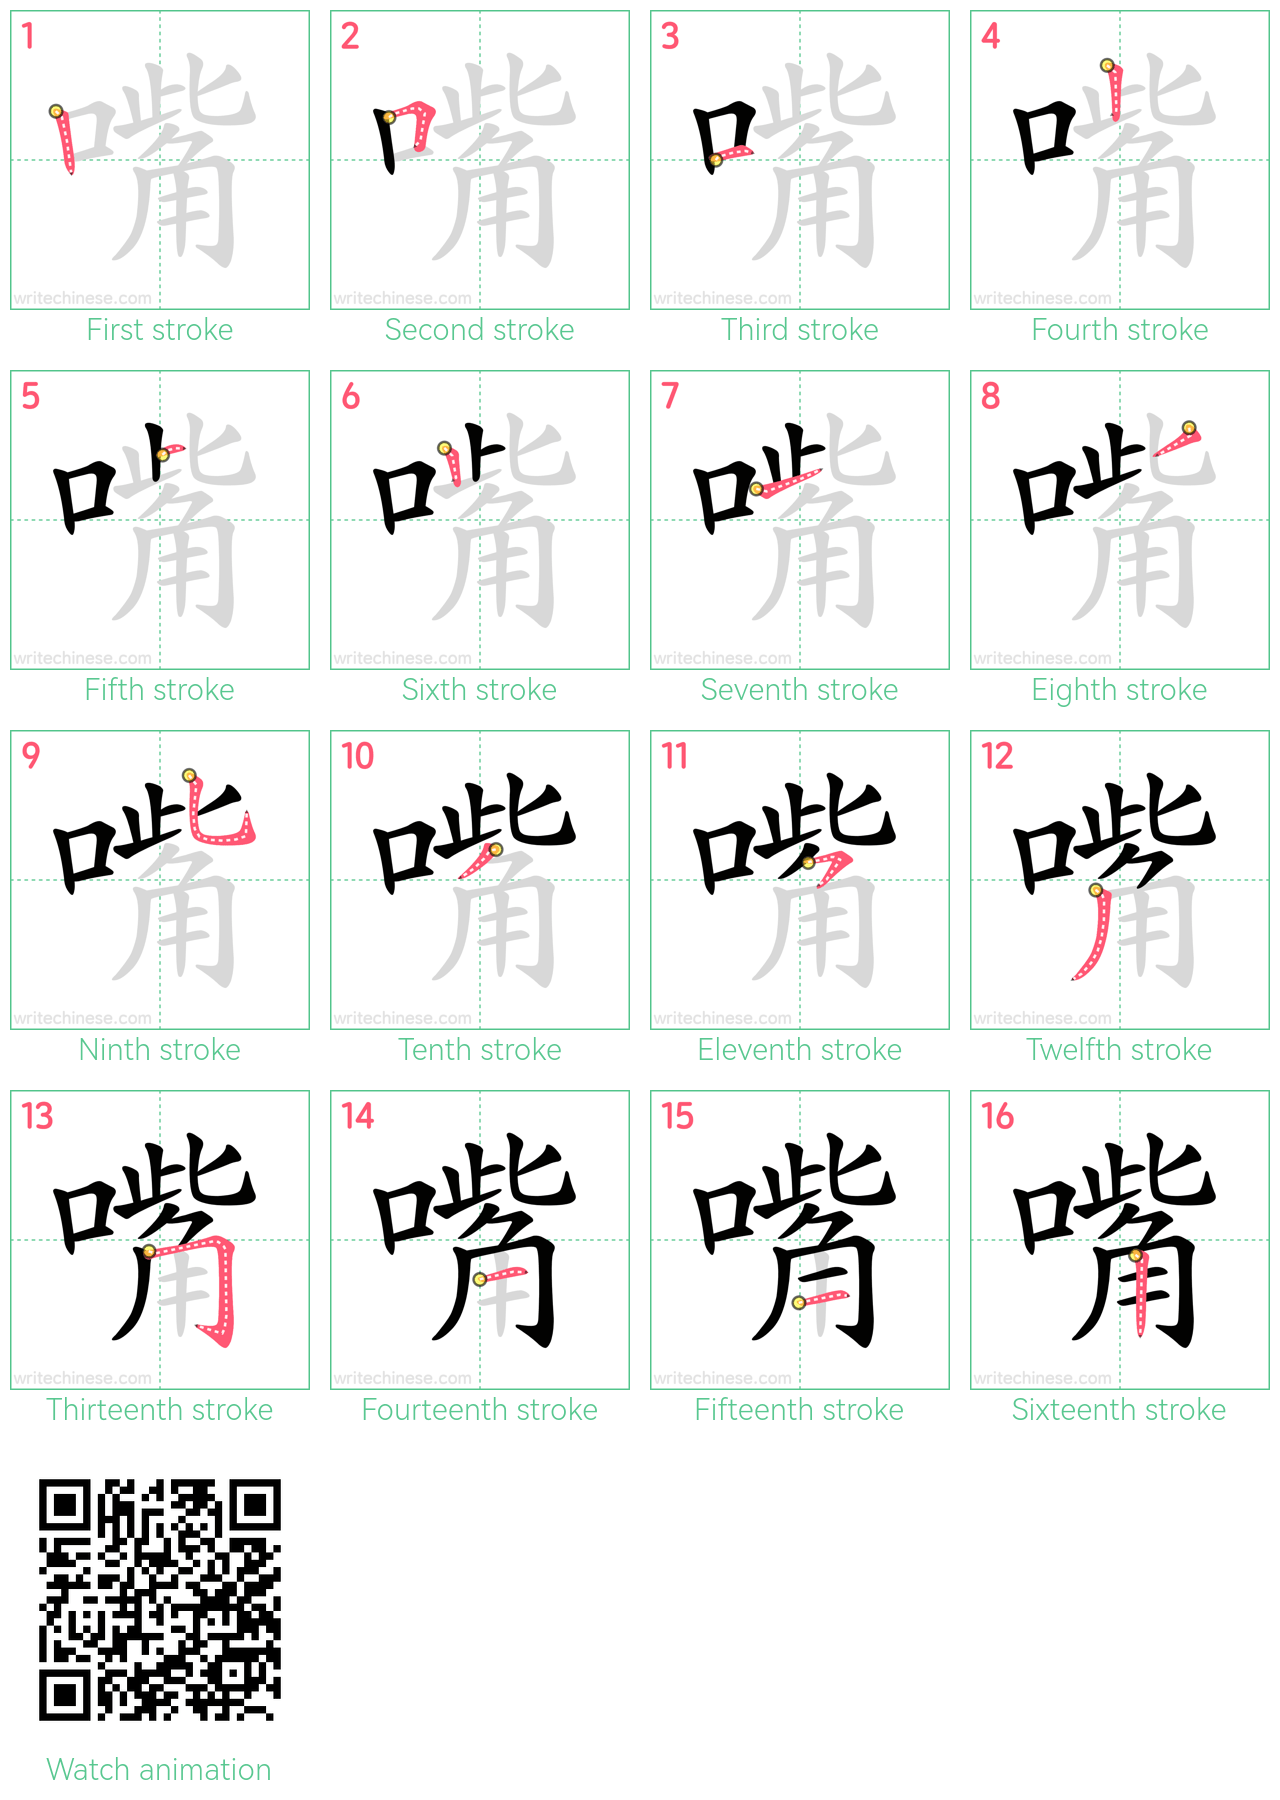 嘴 step-by-step stroke order diagrams